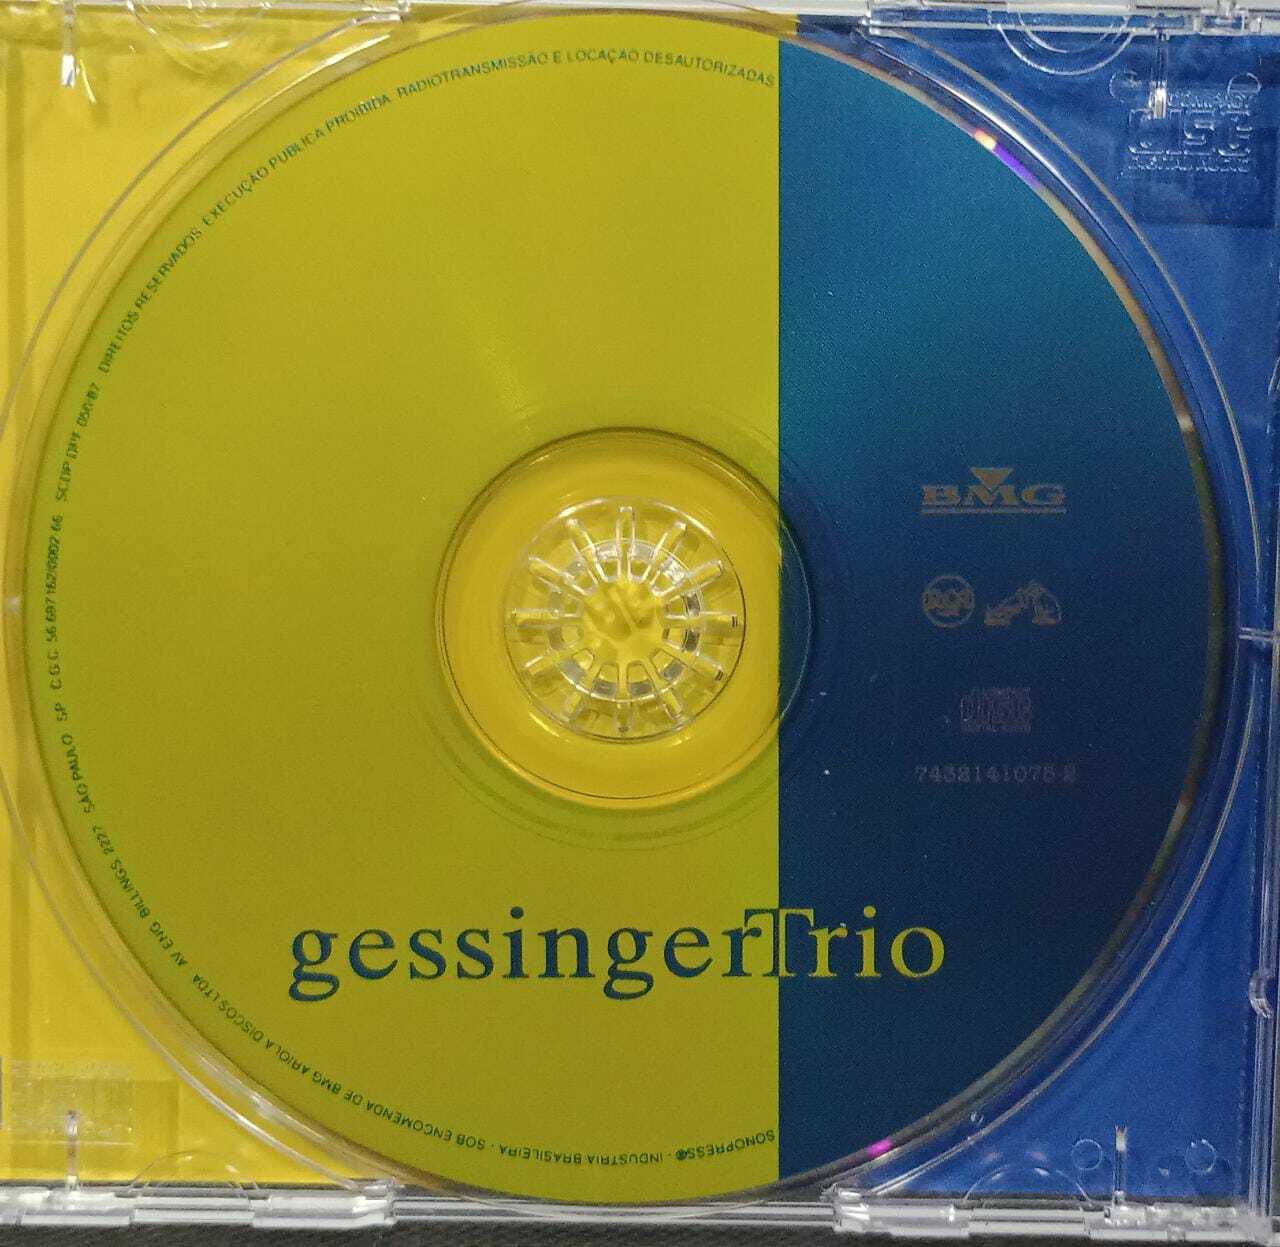 CD - Humberto Gessinger - Humberto Gessinger Trio